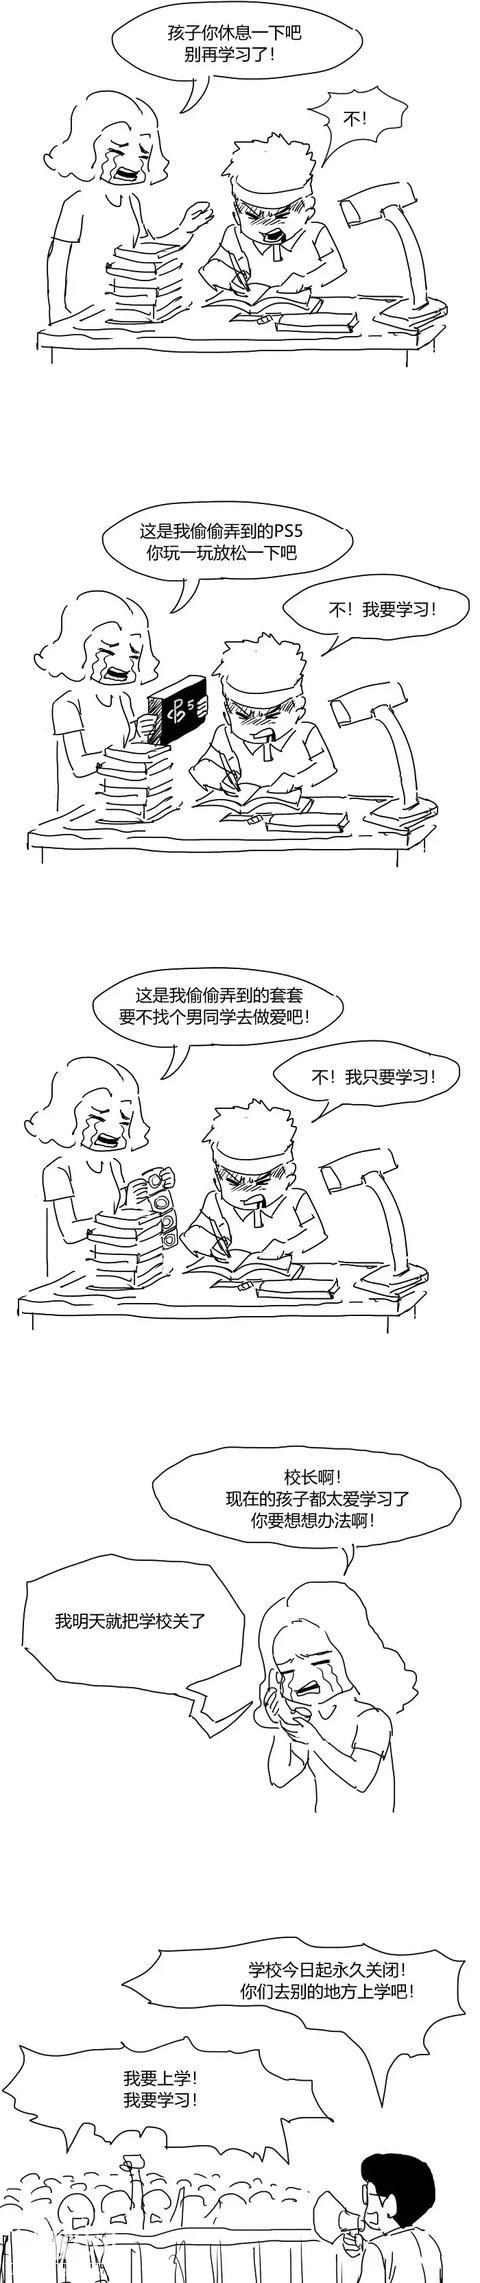 搞笑漫画：努力学习的学生-1.jpg